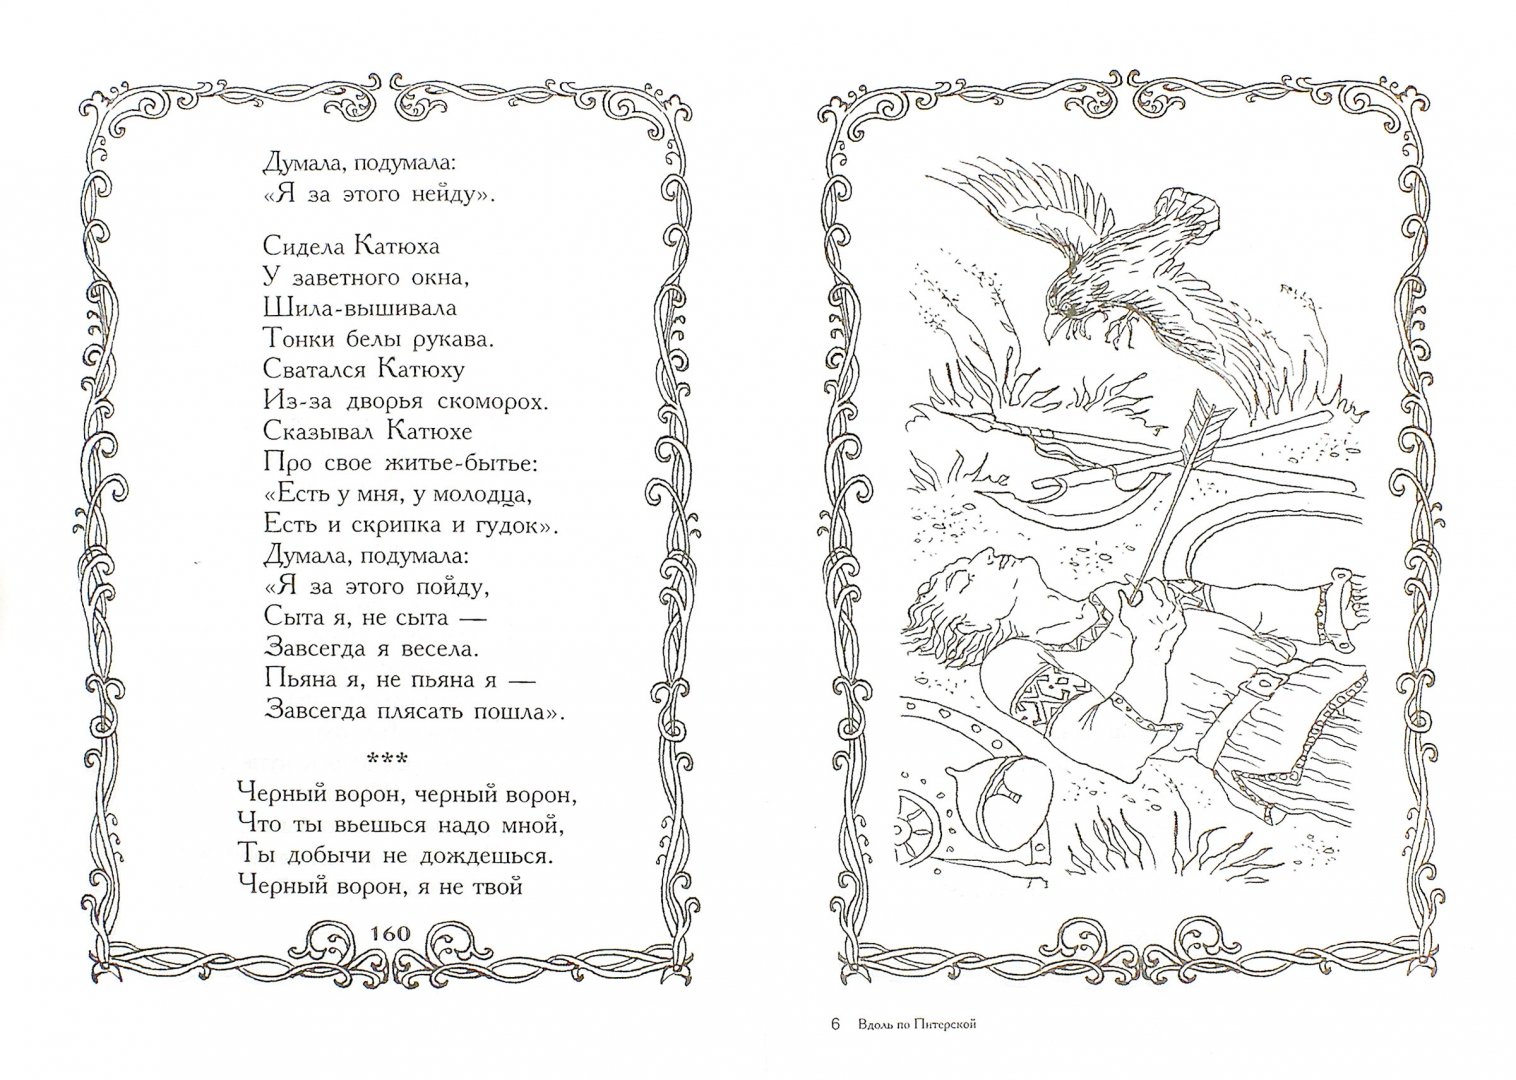 Иллюстрация 1 из 10 для Вдоль по Питерской. Любимые народные песни | Лабиринт - книги. Источник: Лабиринт